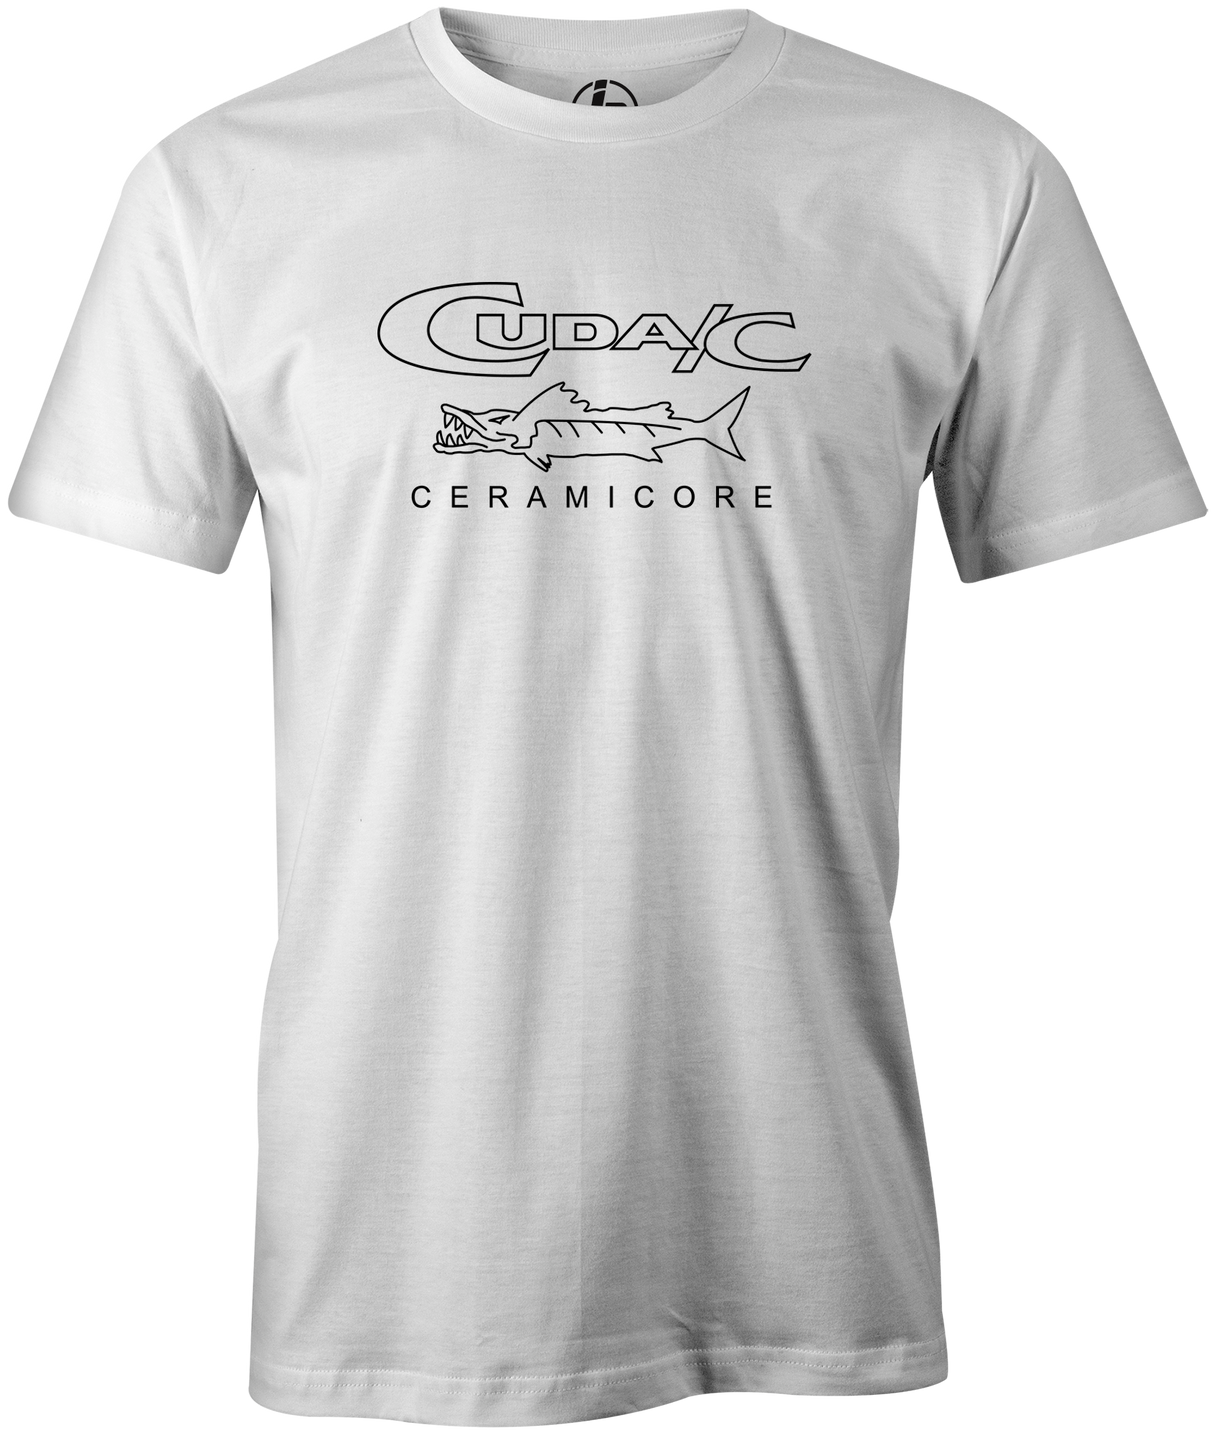 Cuda/C Men's T-Shirt, Bowling, White, Retro, throwback, vintage, old school, bowling ball, fish, tee, tee-shirt, tee shirt, tshirt.